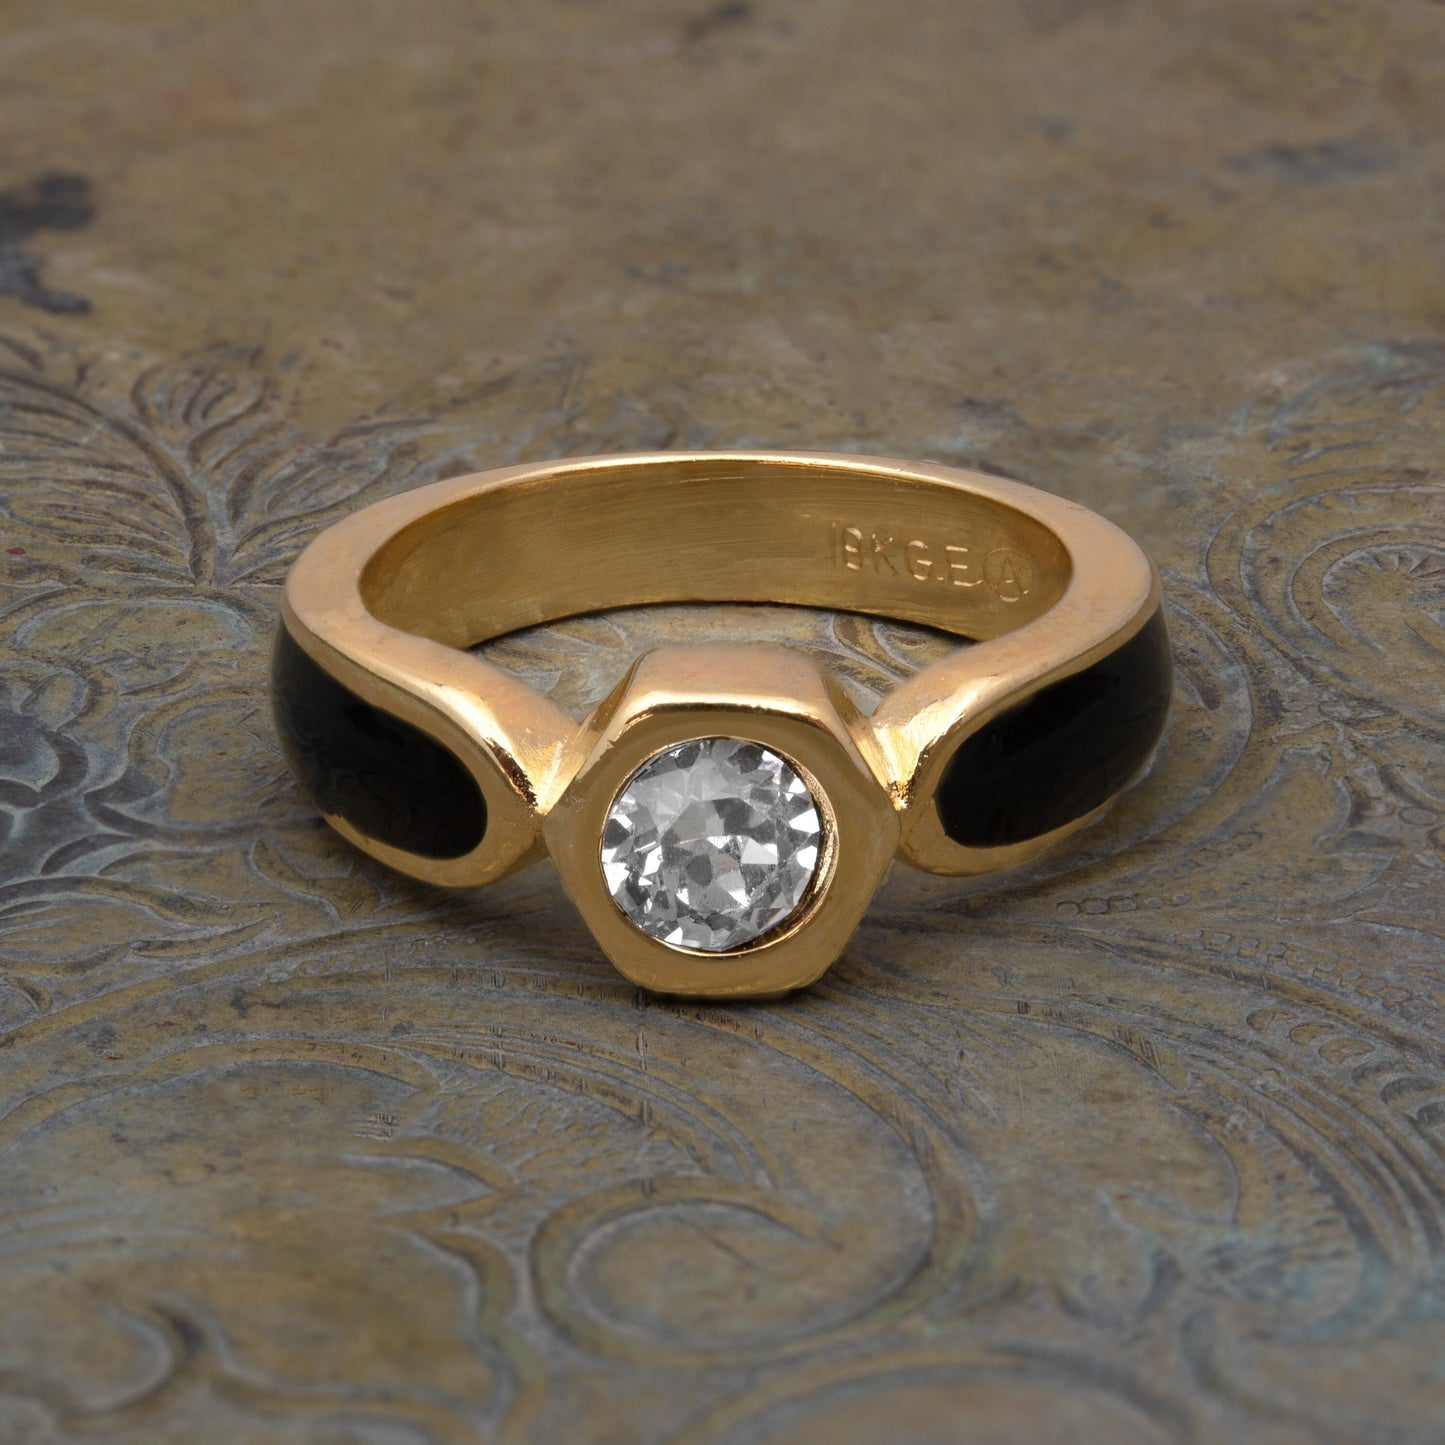 Vintage Ring 1980s Black Enamel Ring with Clear Swarovski Crystals Leaf Motif Antique 18k Gold Plated #R6000 Size 5